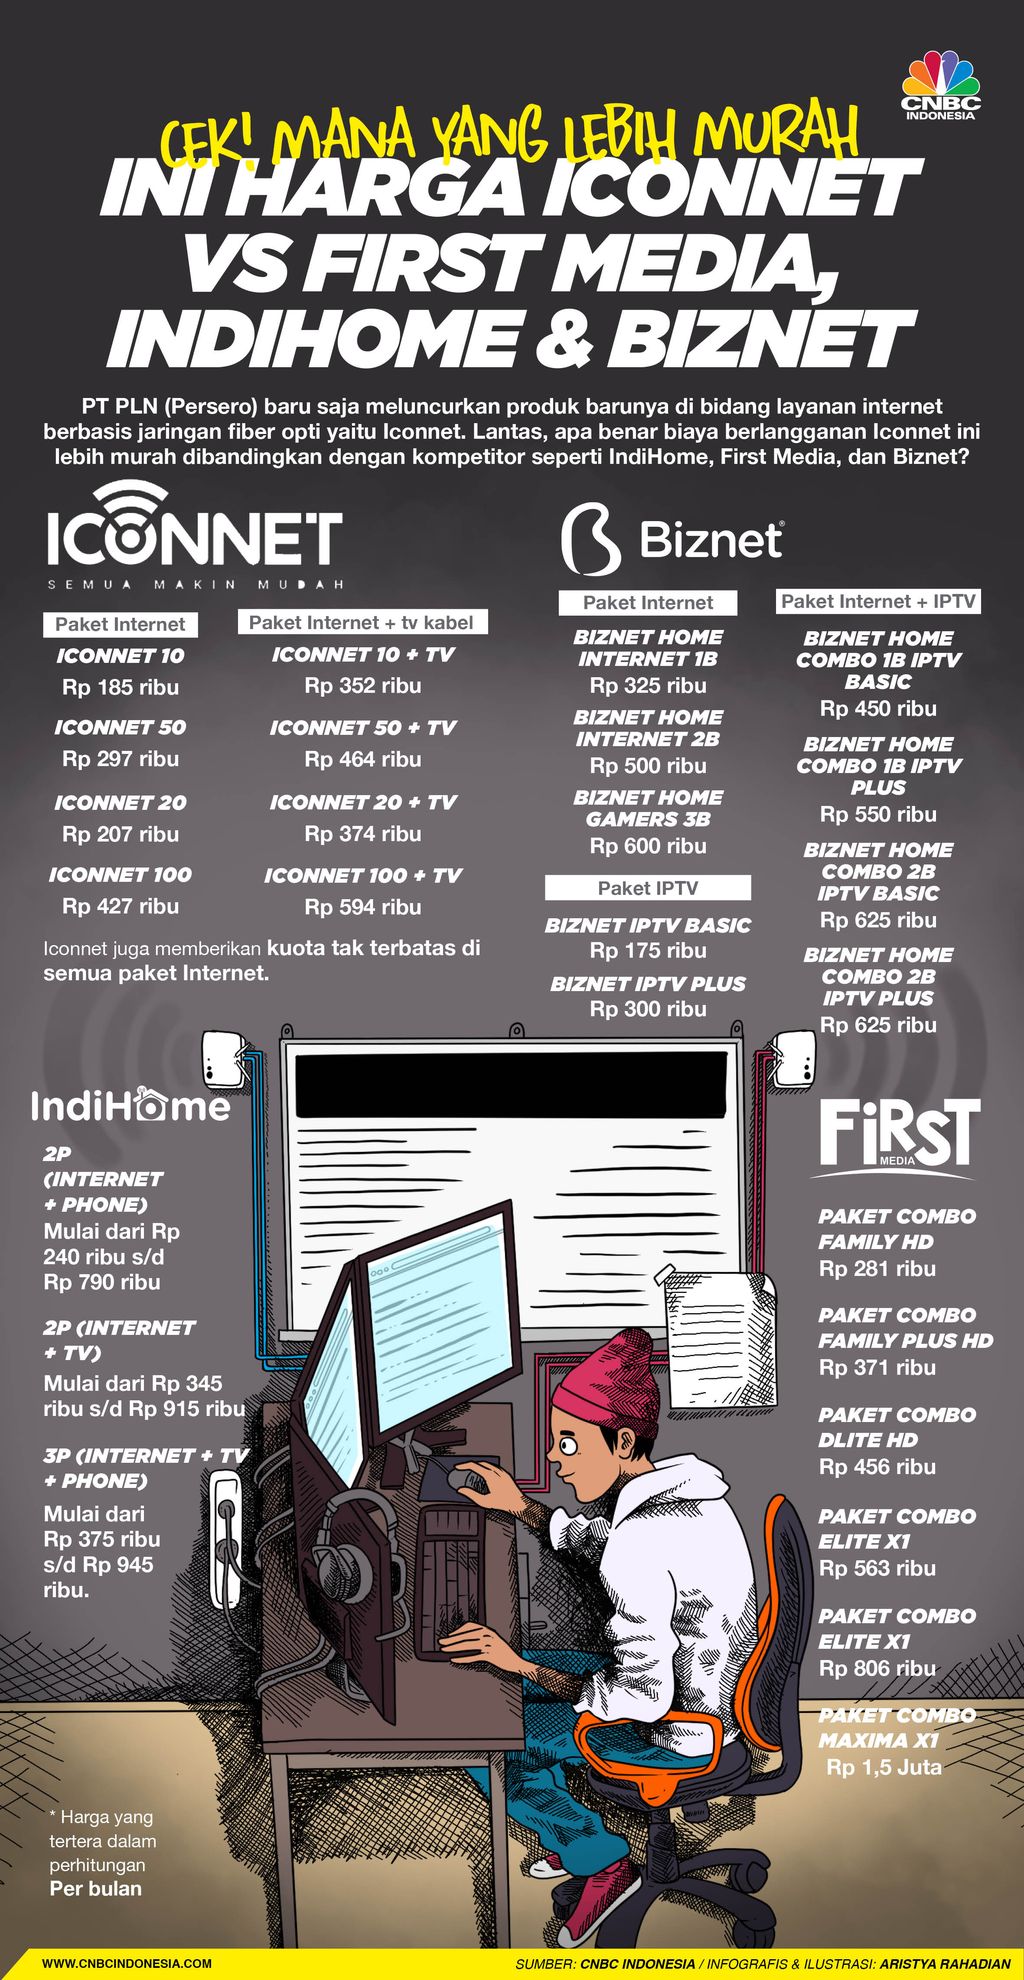 Infografis/Cek! mana yang lebih murah, ini Harga Iconnet Vs  First Media,  IndiHome & Biznet/Aristya Rahadian